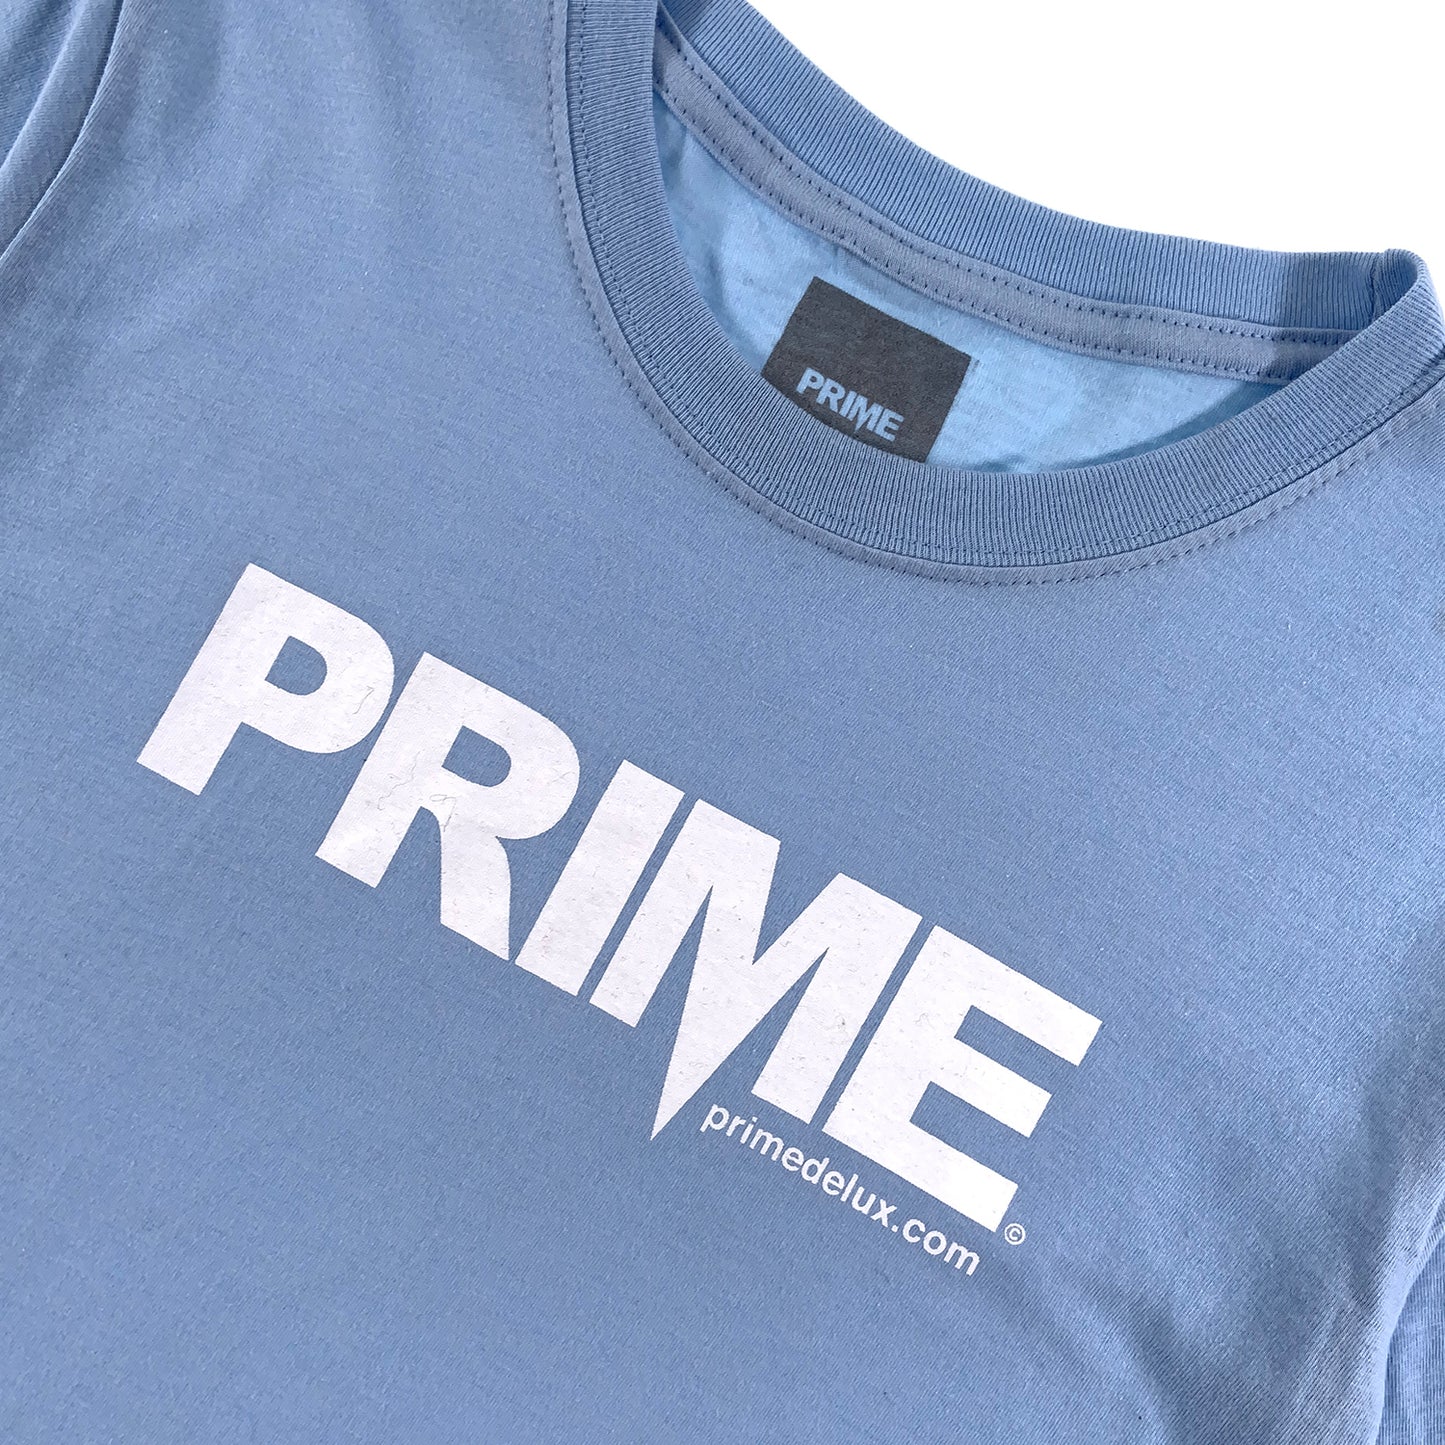 PRIME DELUX YOUTHS OG PREMIUM SHORT SLEEVE T-SHIRT - LIGHT BLUE / WHITE - Prime Delux Store